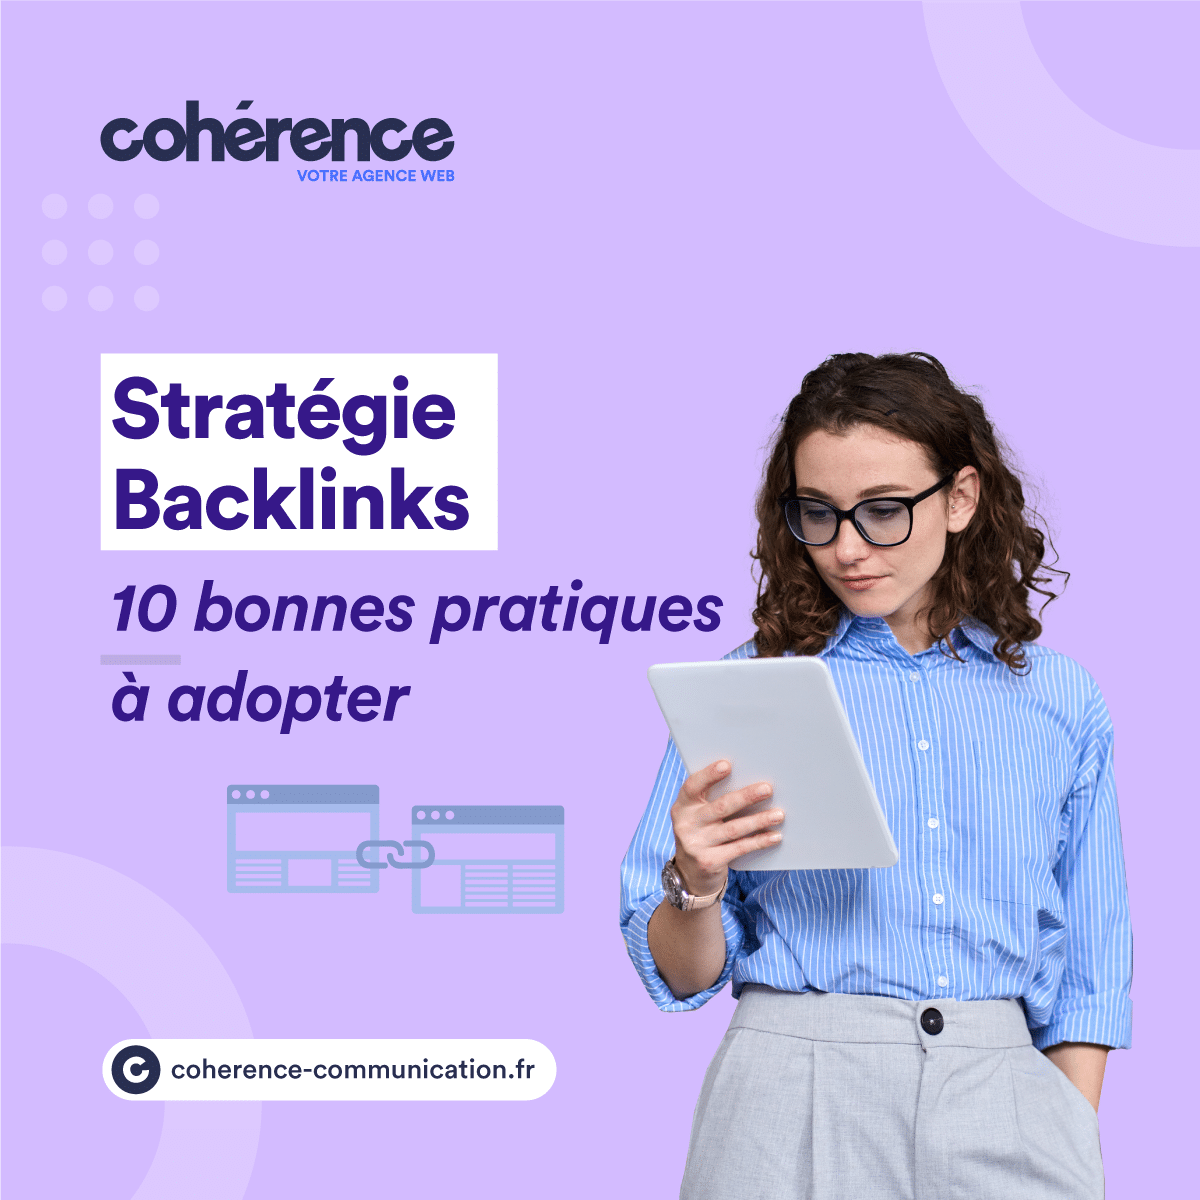 Coherence Agence Digitale Strategie Backlinks 10 Bonnes Pratiques A Adopter